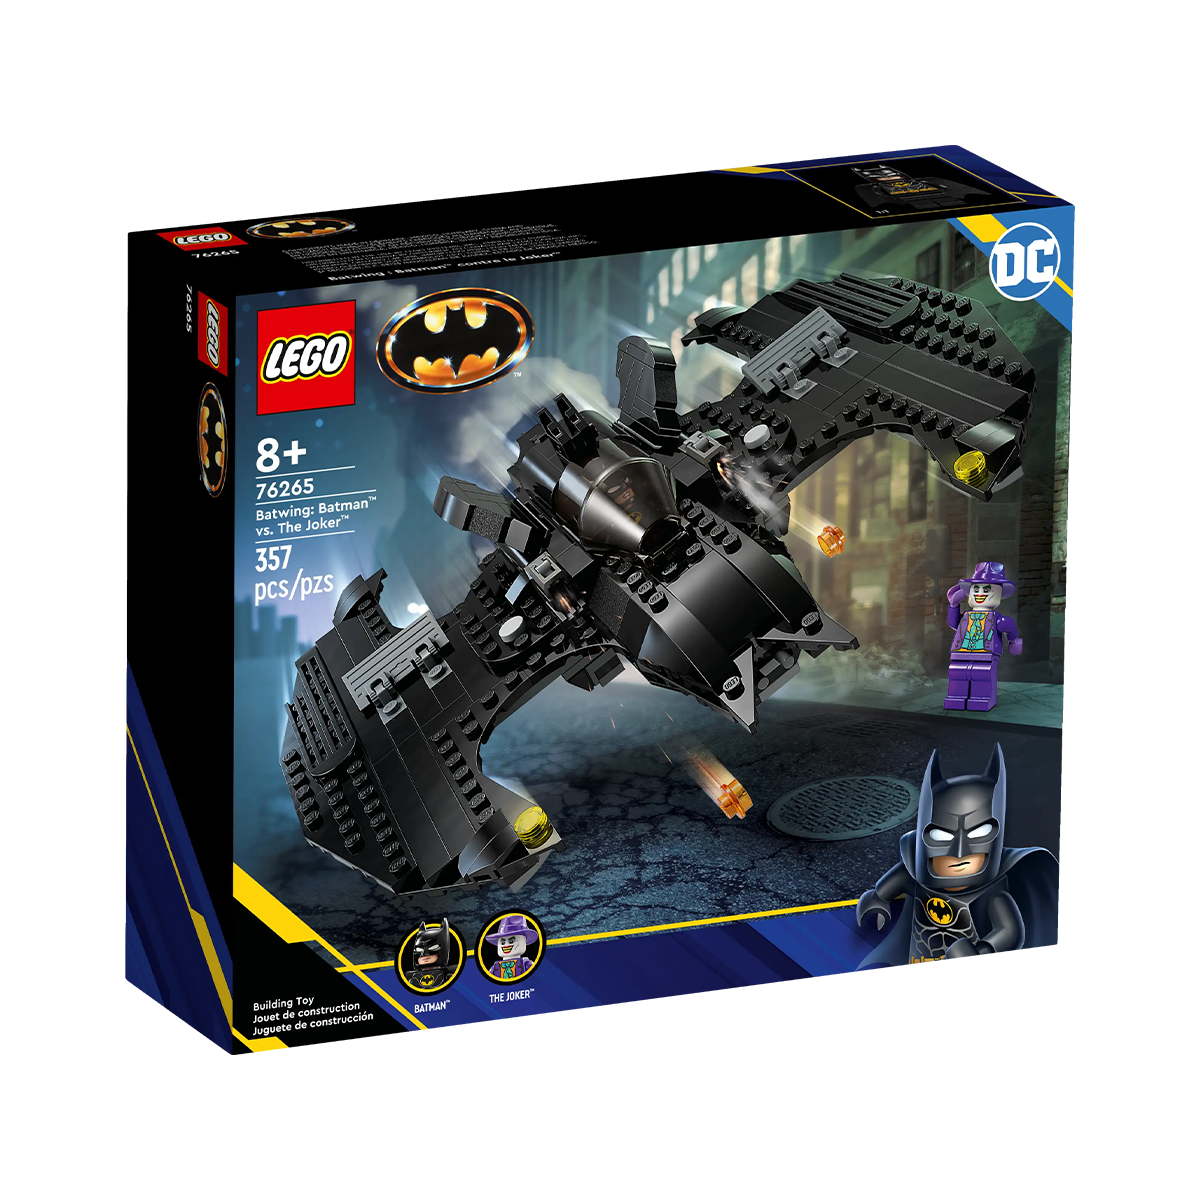 Блочный конструктор LEGO Batwing: Бэтмен против Джокера (76265)